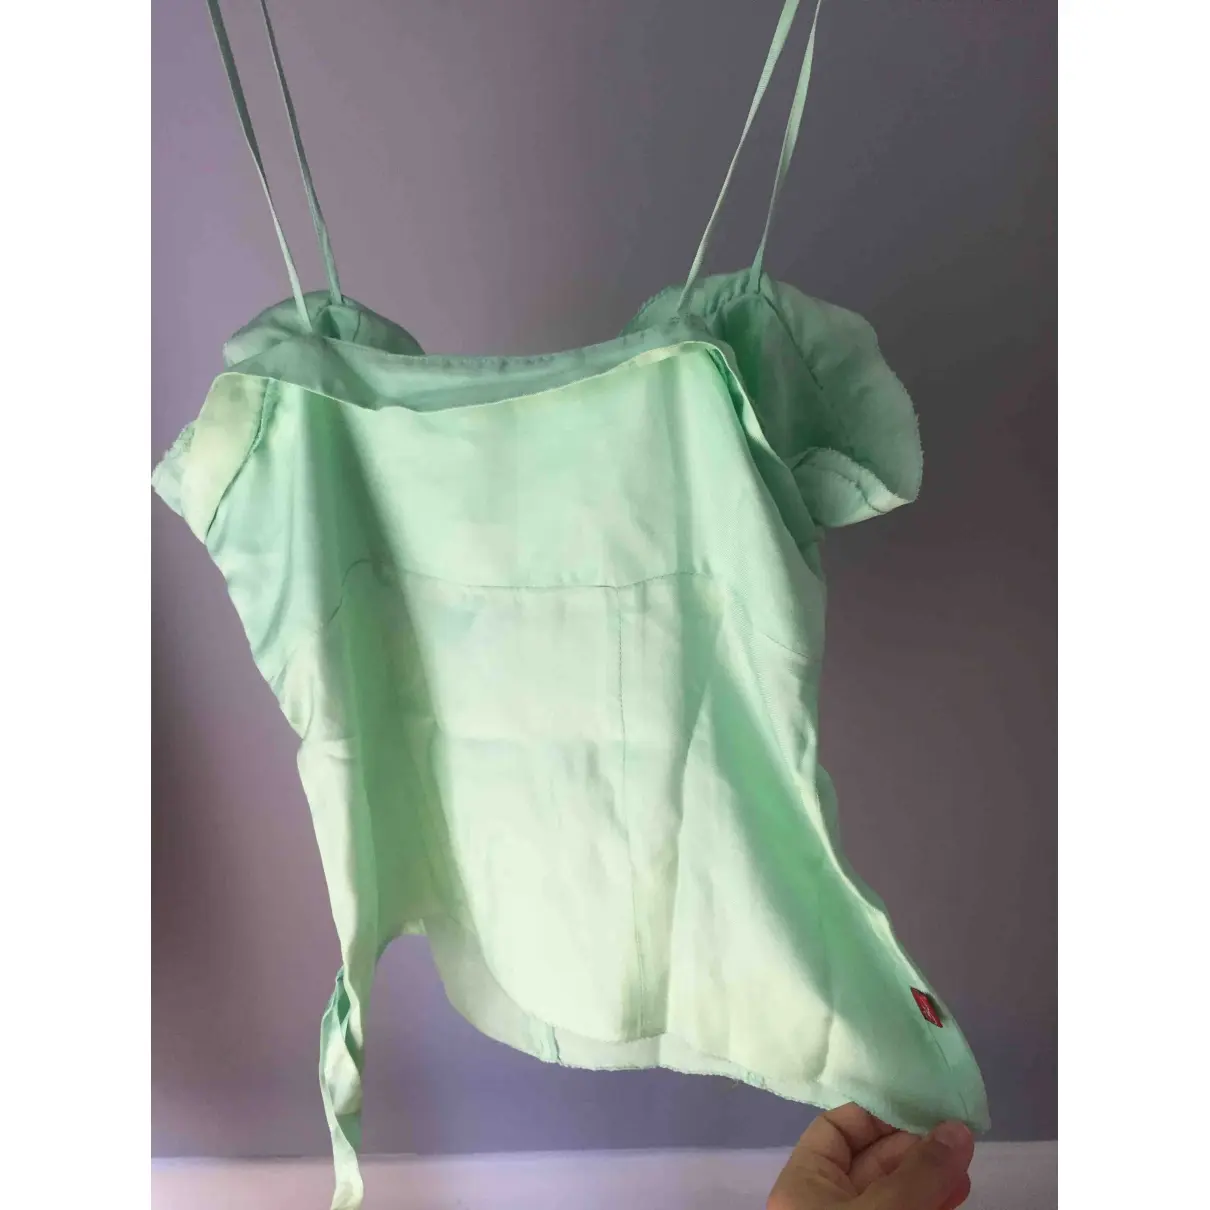 Buy Christian Lacroix Silk camisole online - Vintage